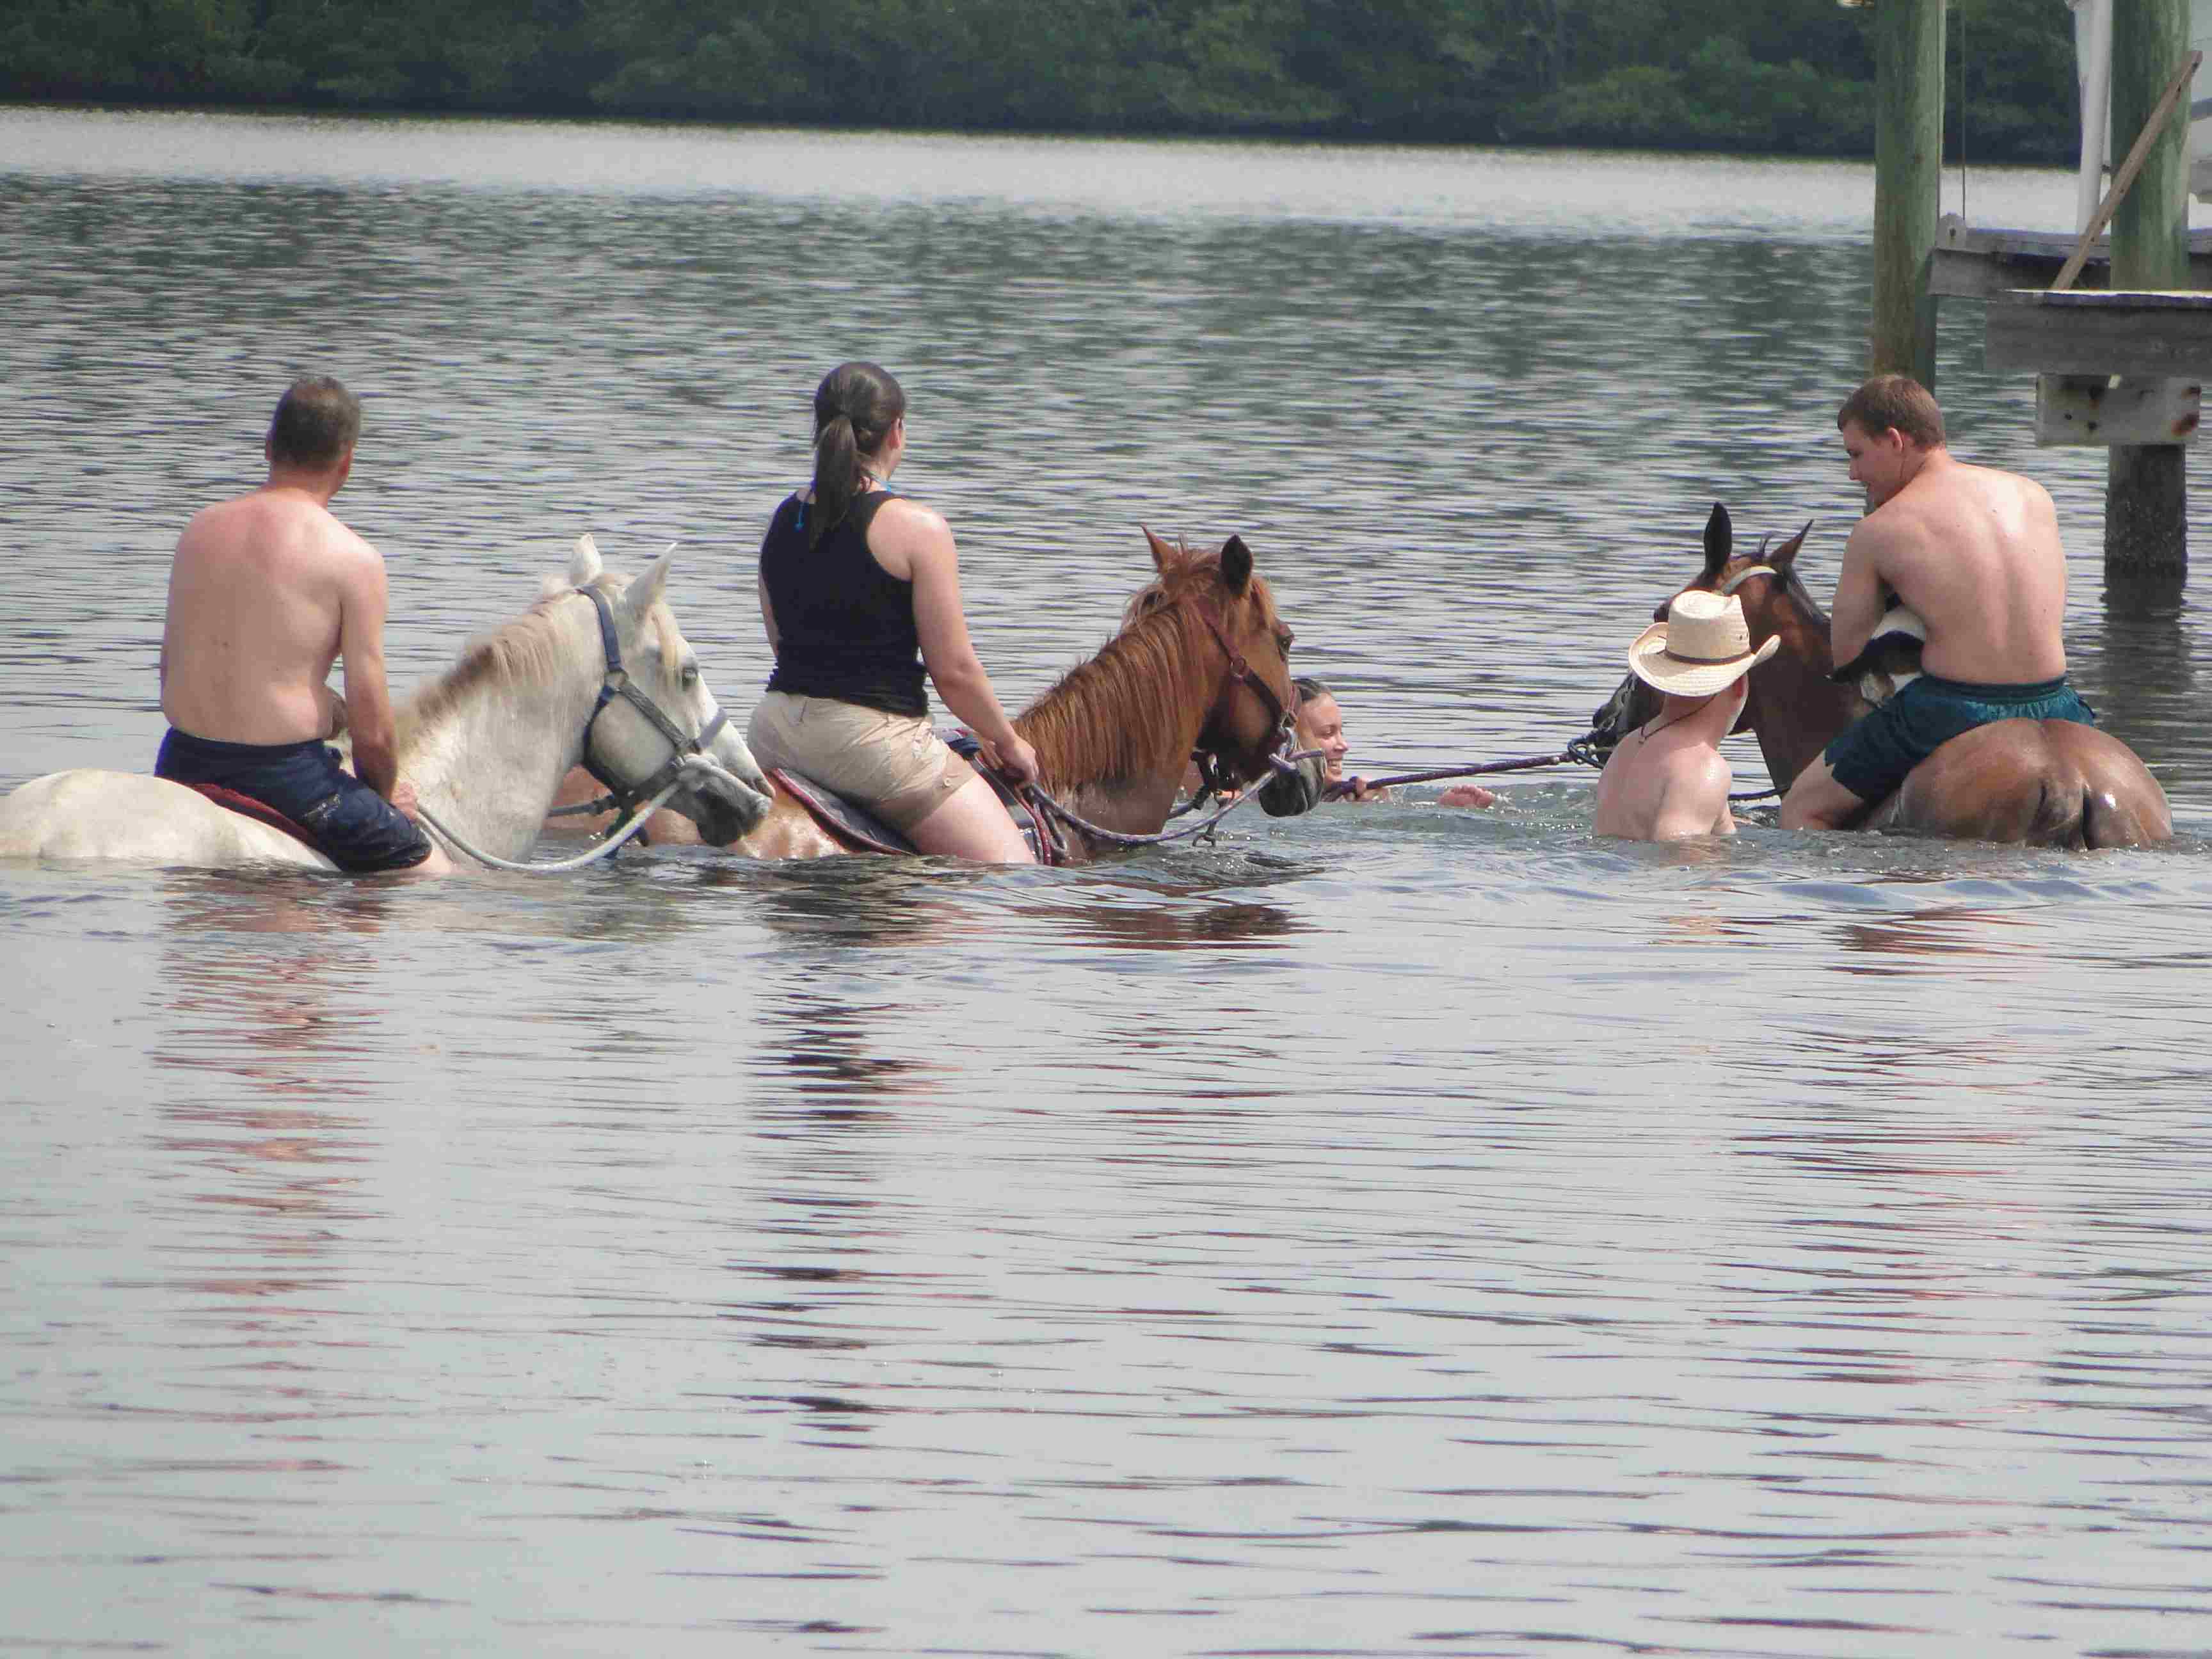 En el caballo se mete al agua: los valientes intentan surfear. Foto: Área de Bradenton